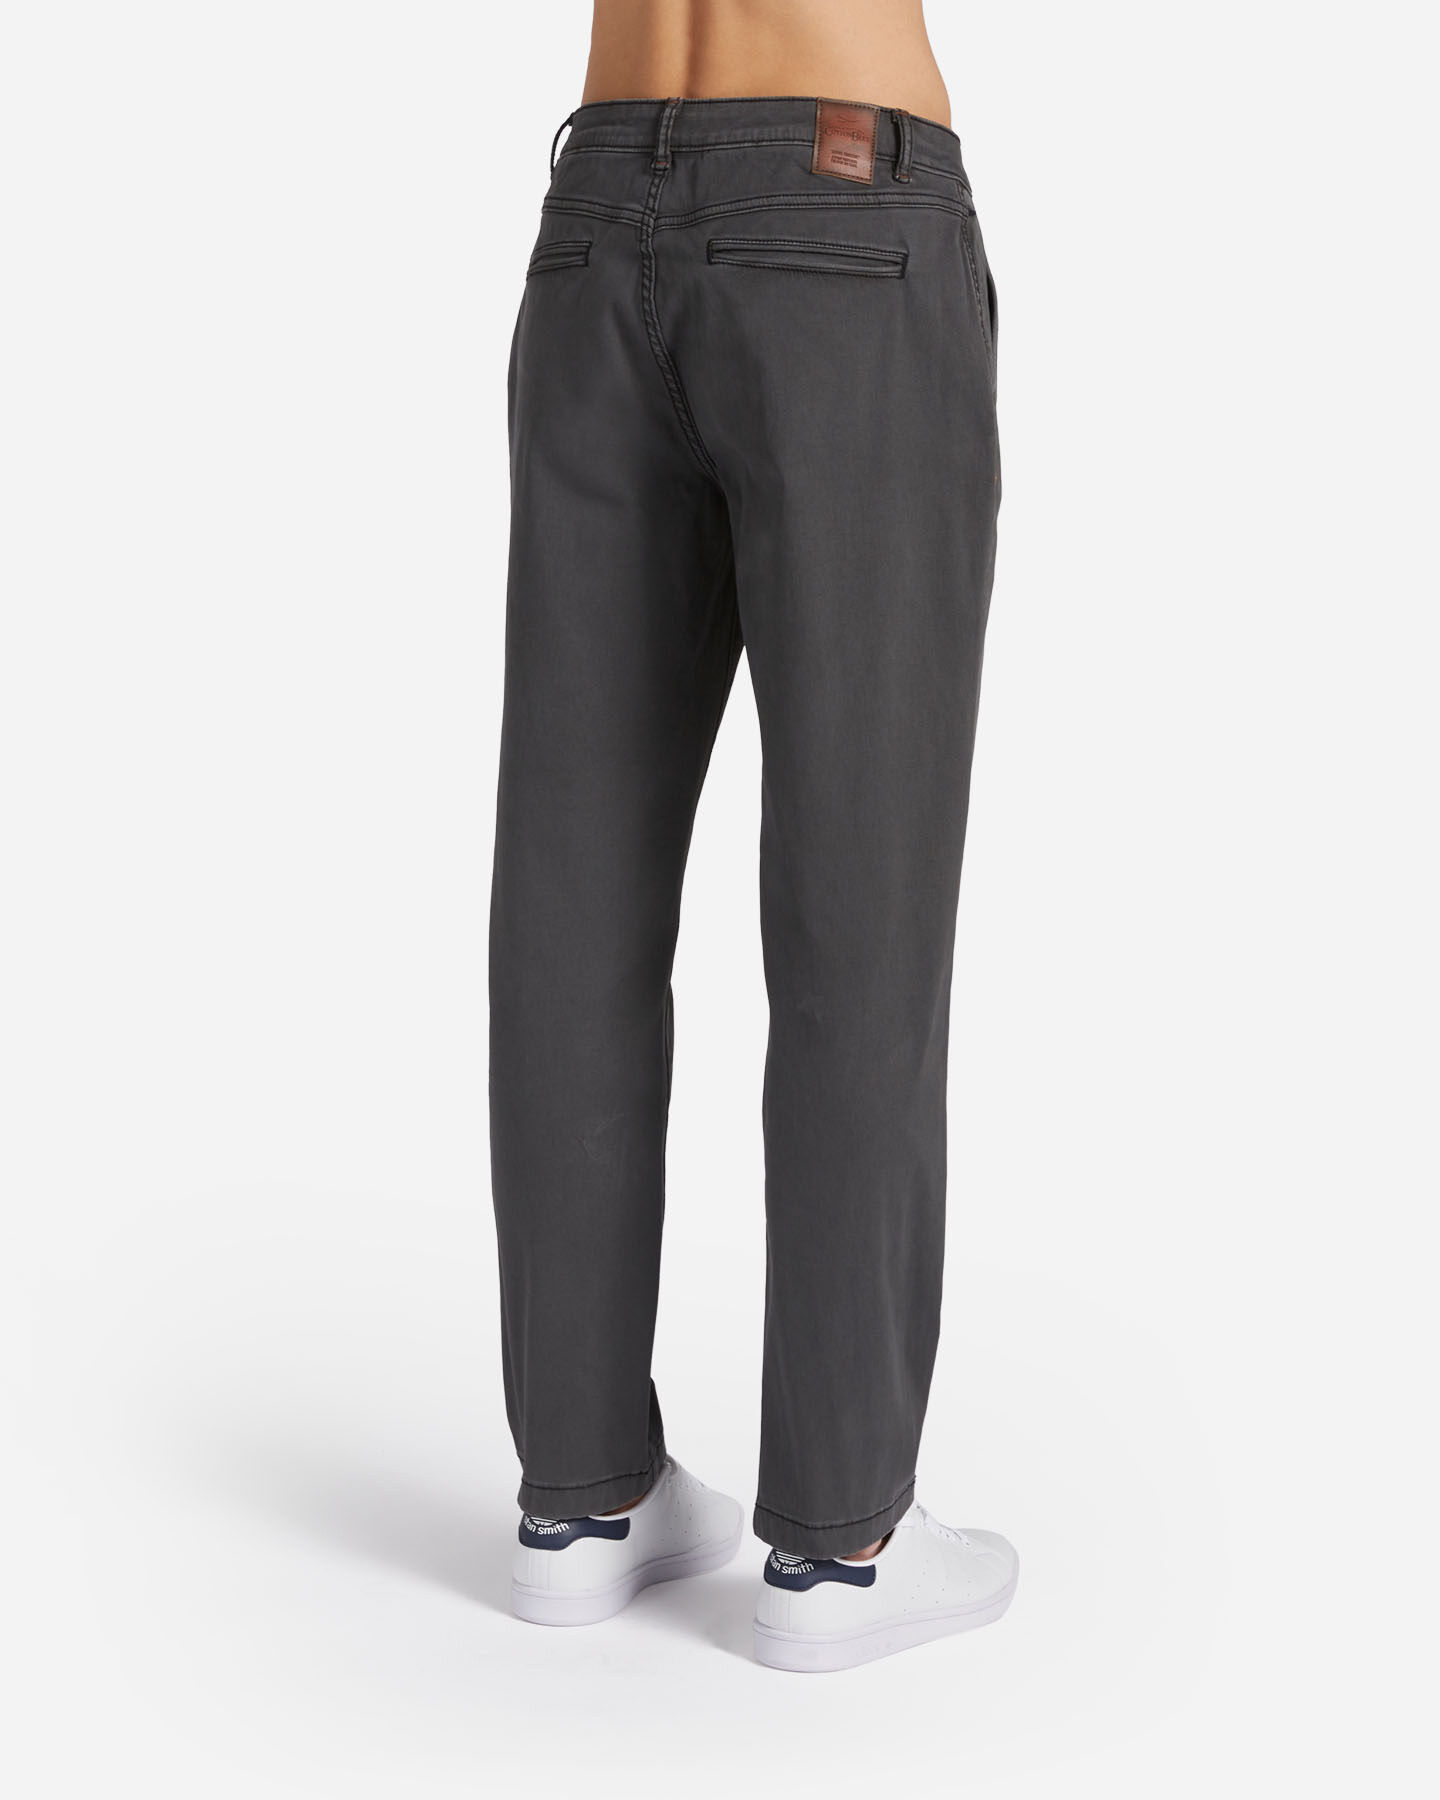  Pantalone COTTON BELT CHINO HYBRID M S4127004|910|32 scatto 1